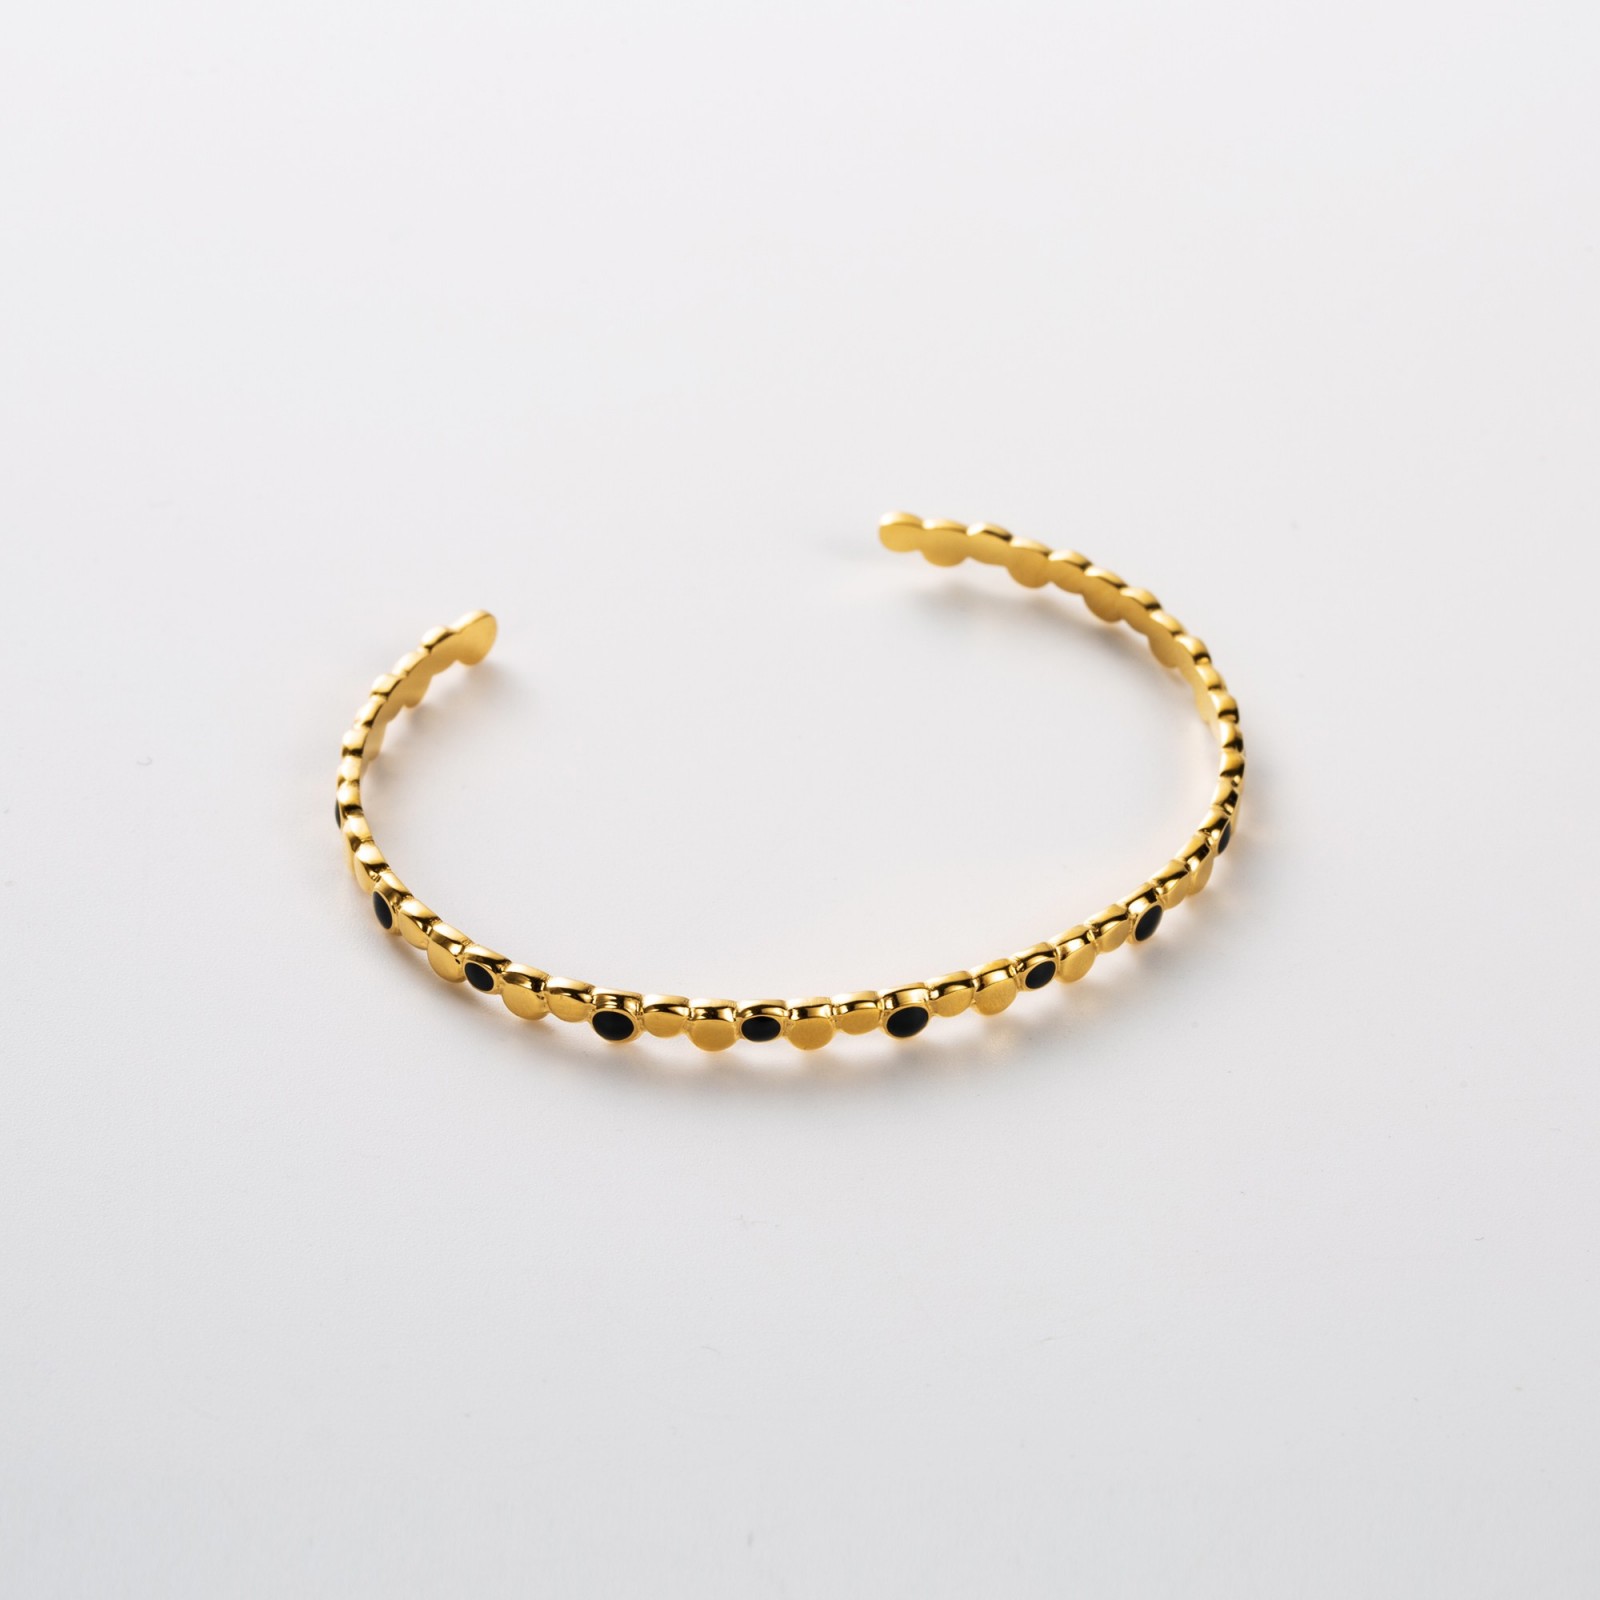 Irregular Colored Beads Necklace Bracelet Color:Black